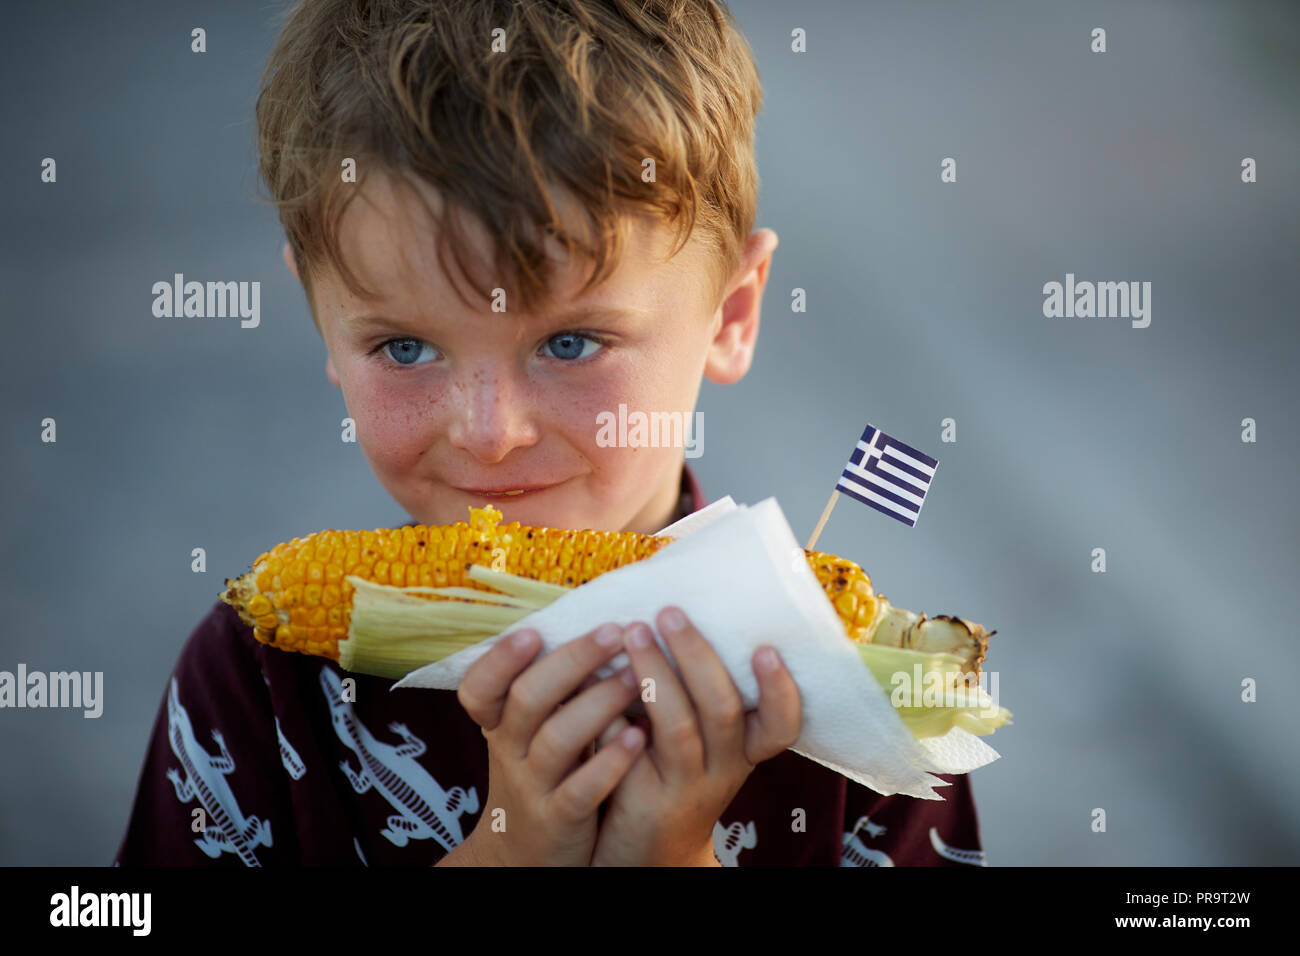 Ein Junge essen Griechische Street Food Maiskolben in Griechenland, Santorini, Kykladen Inseln Stockfoto